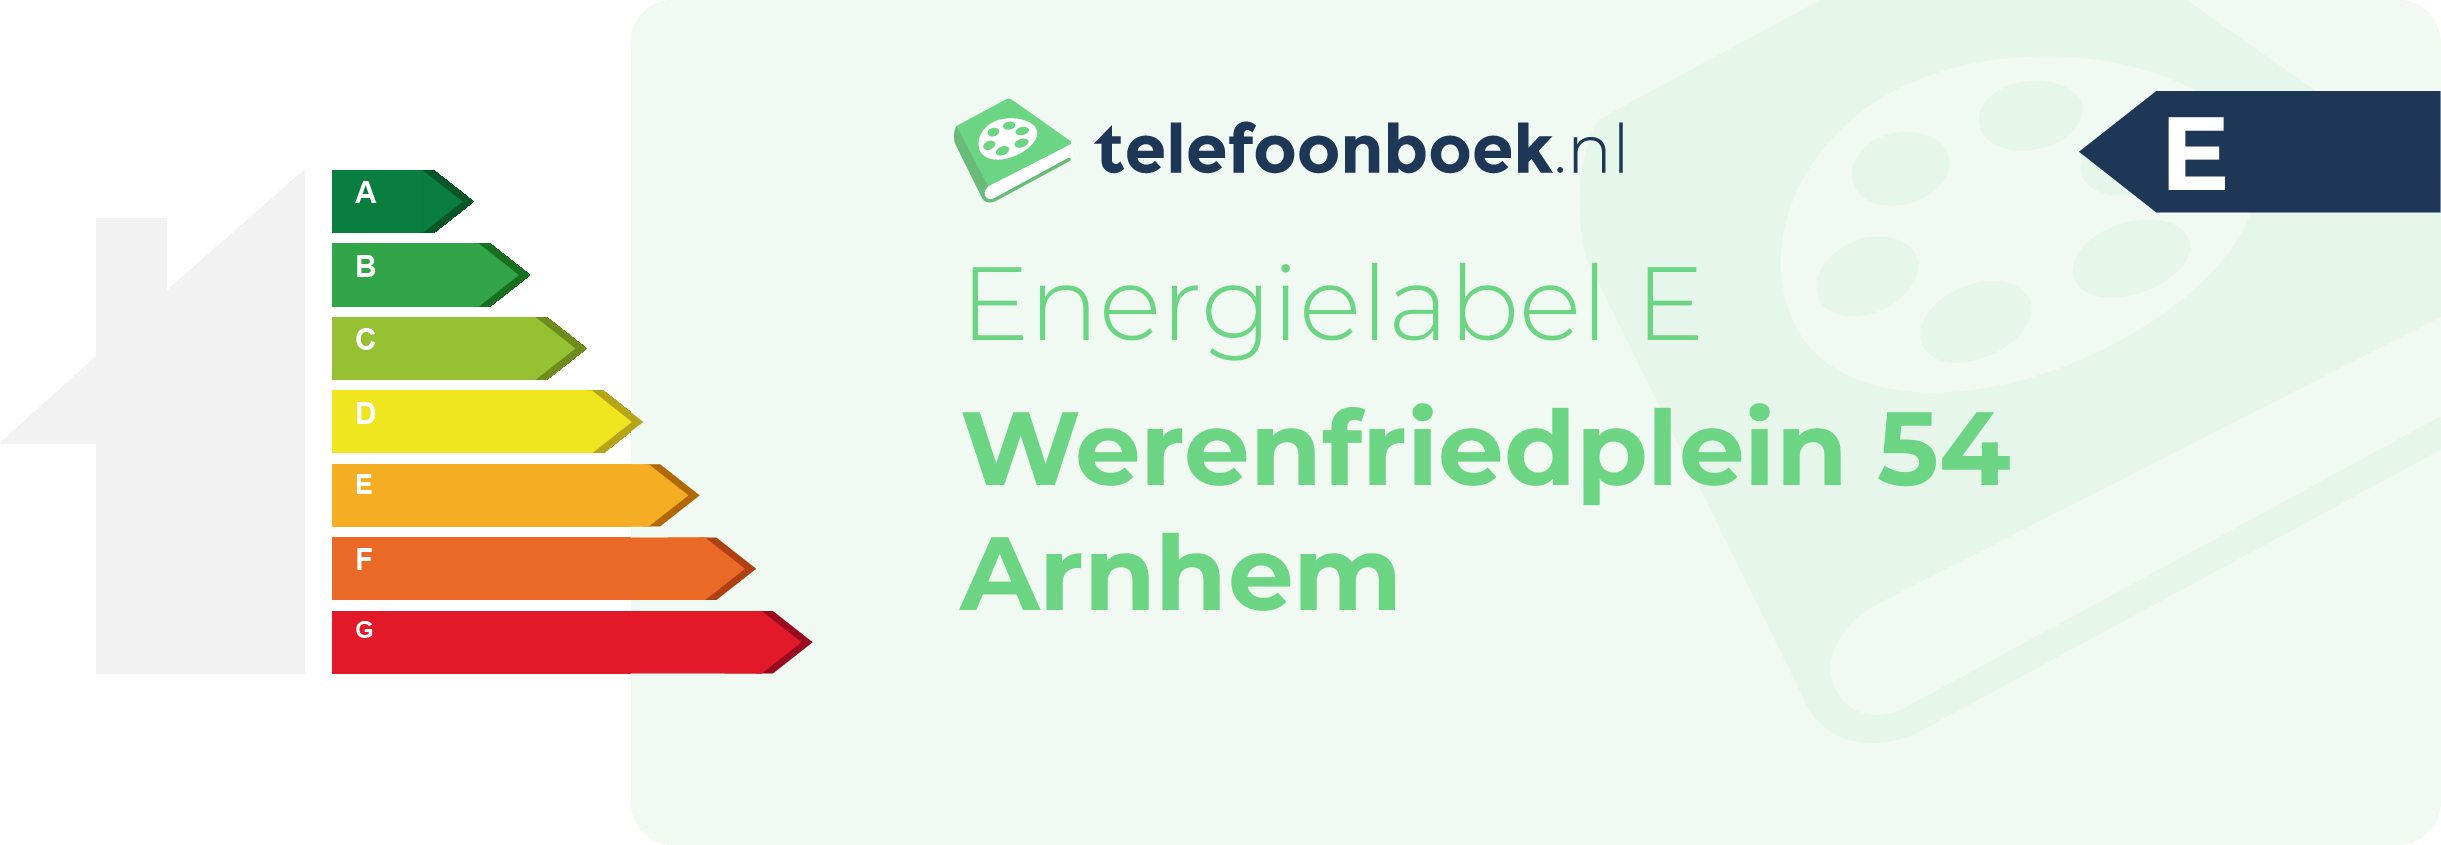 Energielabel Werenfriedplein 54 Arnhem